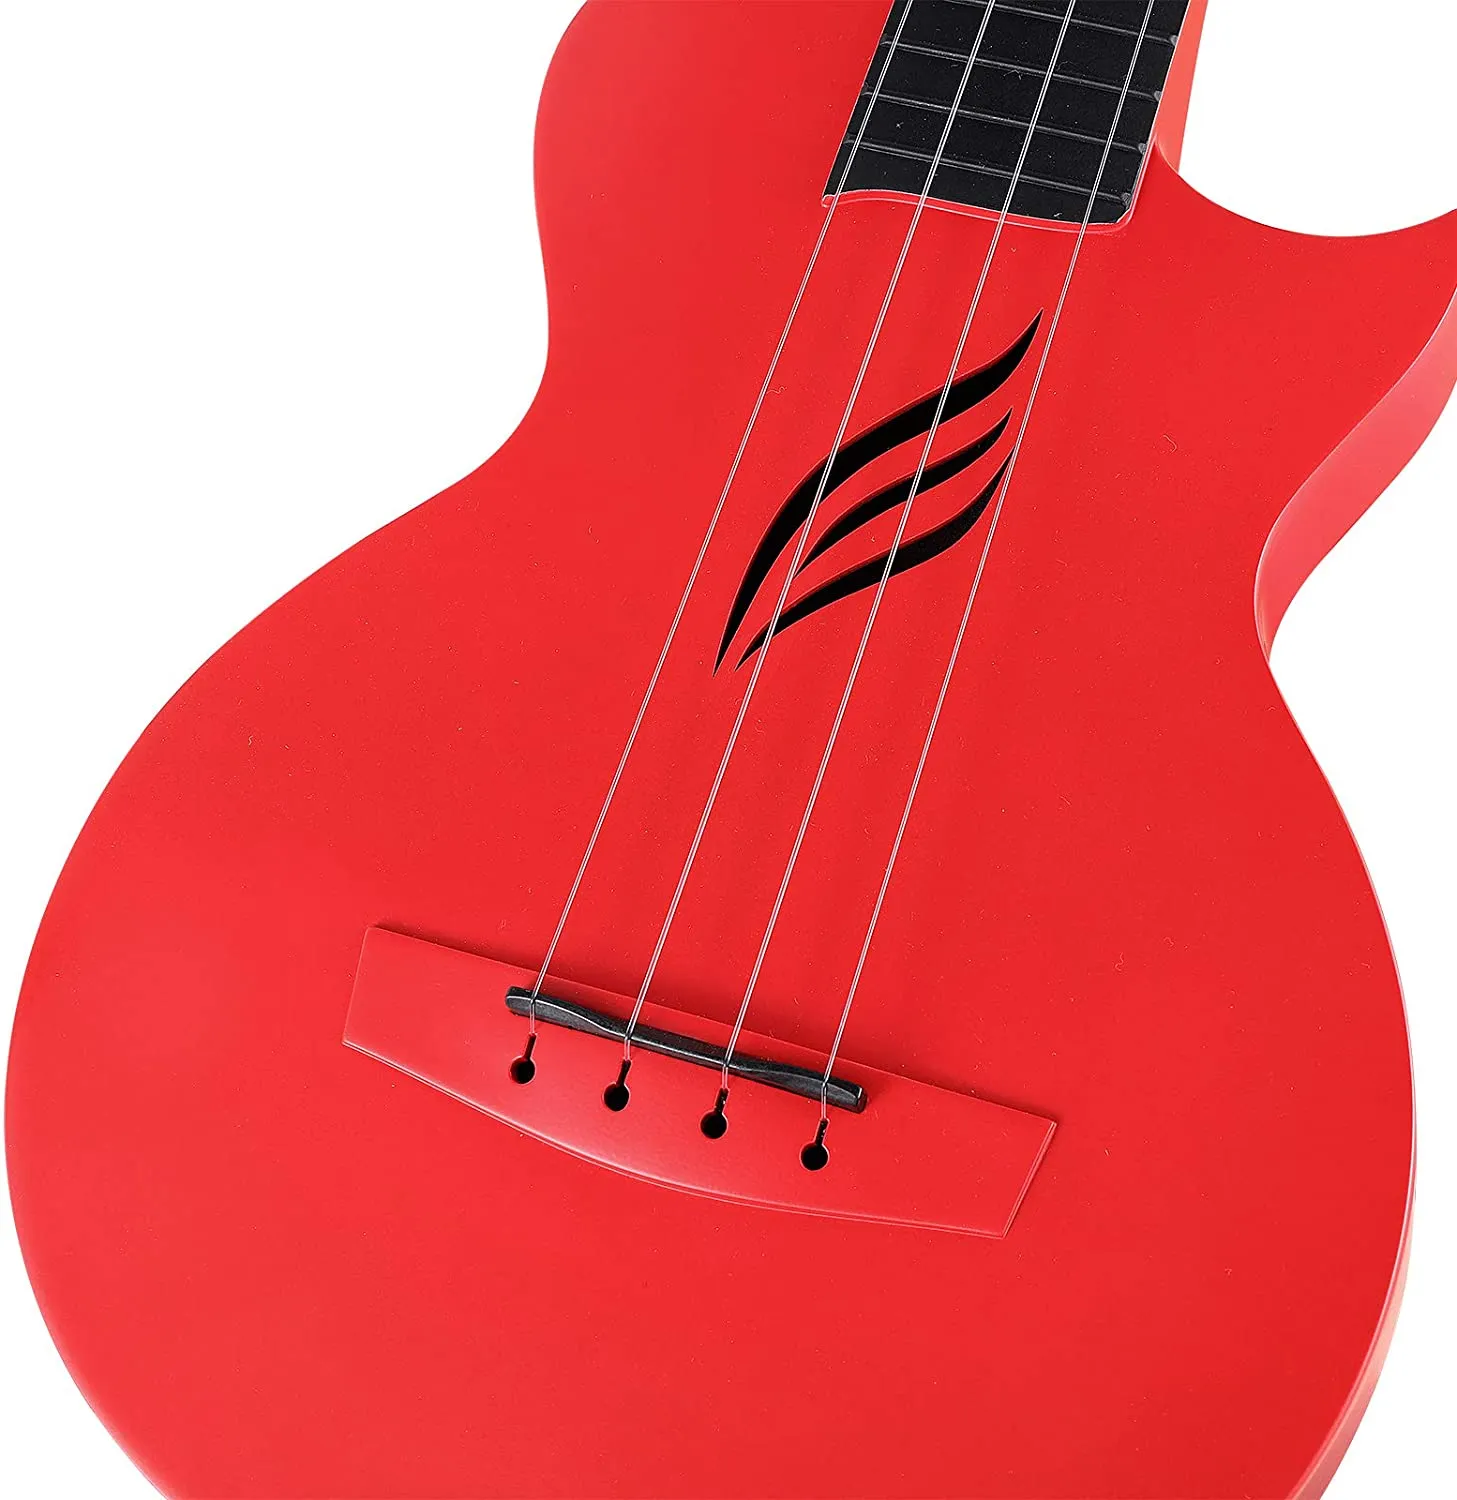 Enya Nova-Ukulele Intelligent Acoustic Guitar red, 4 Strings, Carbon Fiber, Beginner Instrument, 23", U, 23"